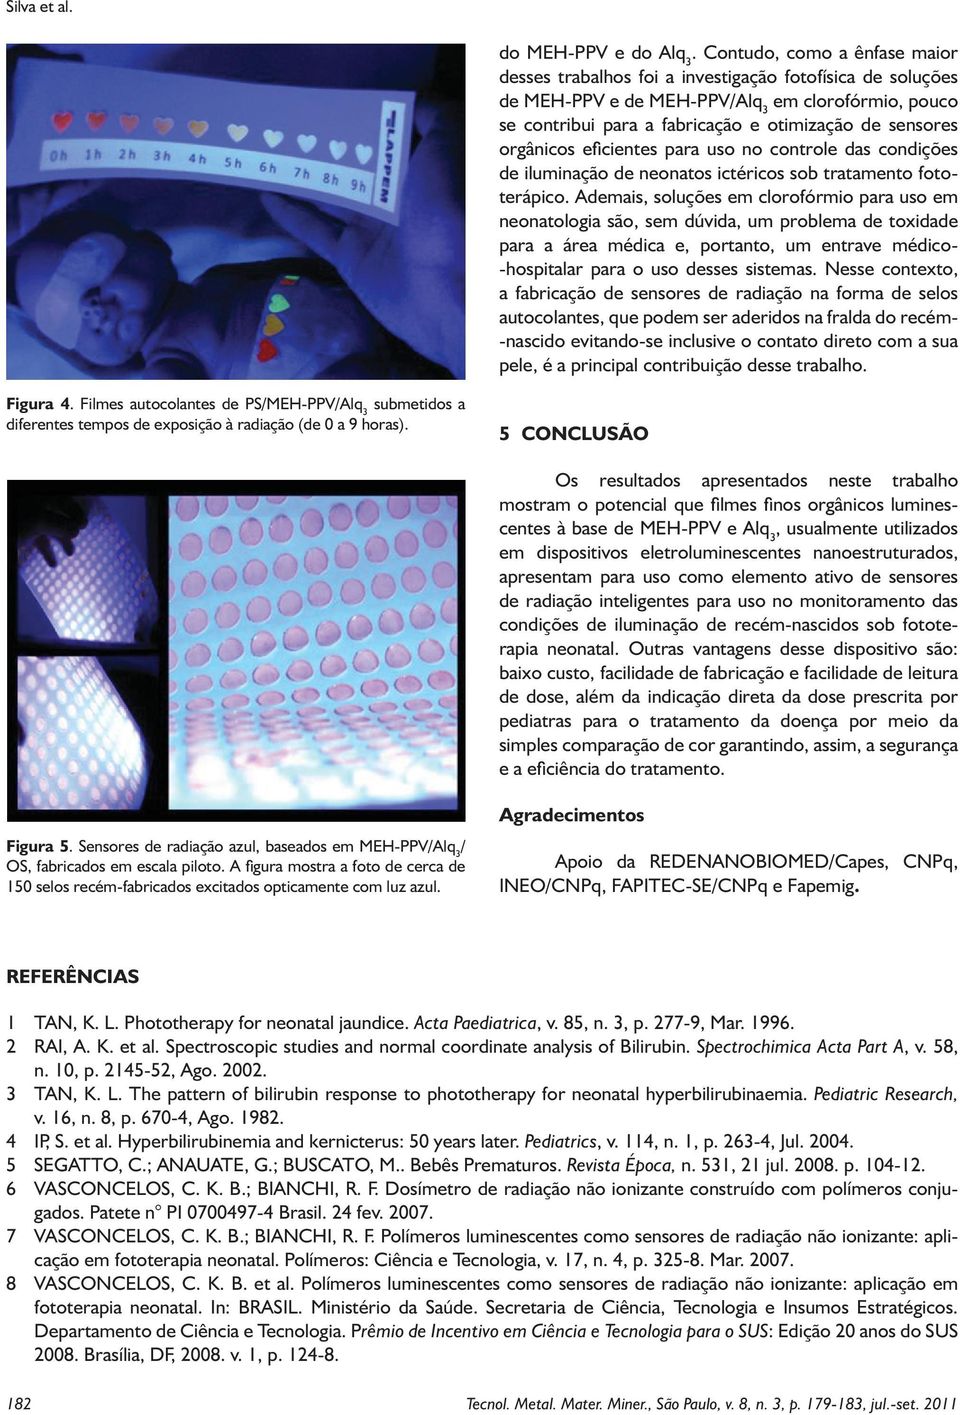 orgânicos eficientes para uso no controle das condições de iluminação de neonatos ictéricos sob tratamento fototerápico.